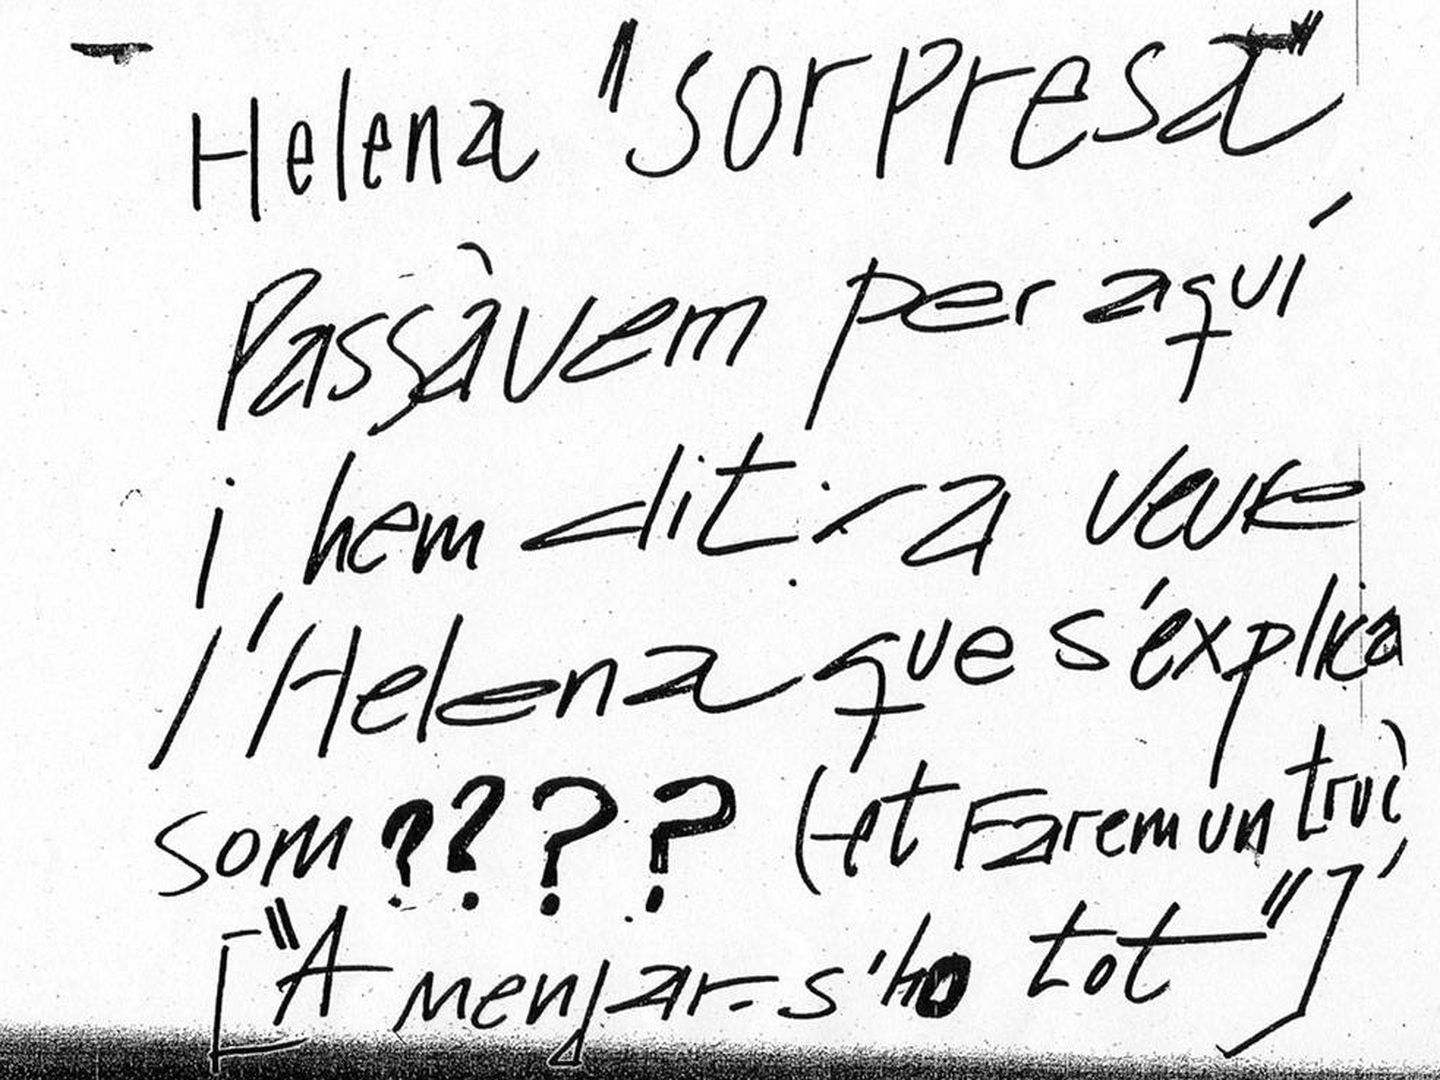 La primera nota anónima que recibió Helena Jubany el 17 de septiembre de 2001